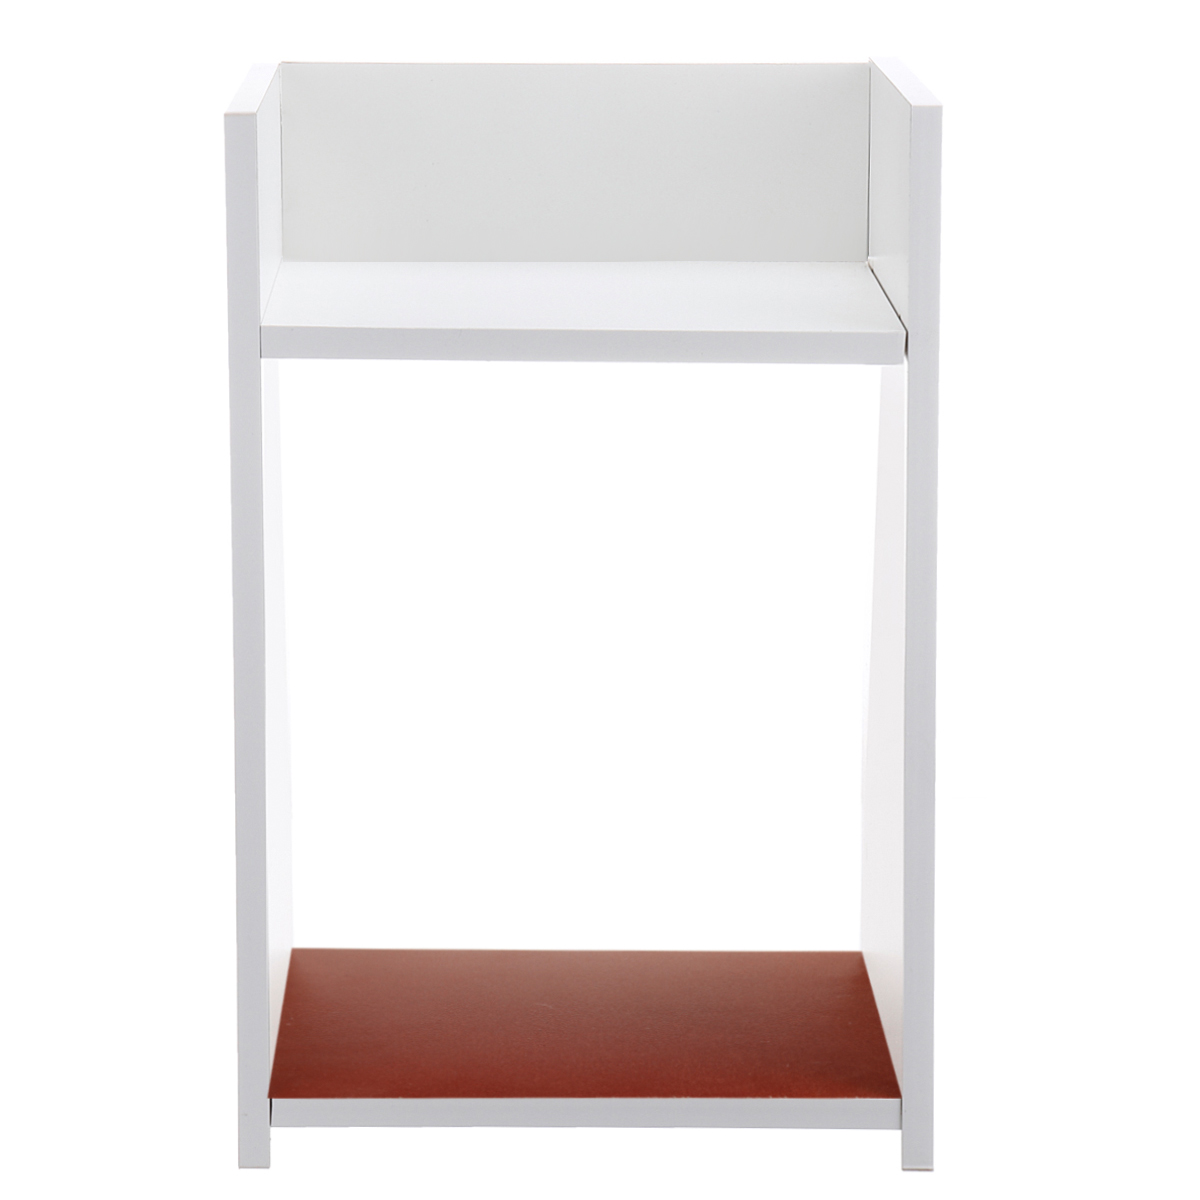 Assembled-Storage-Cabinet-Wooden-Storage-Bedside-Cabinet-White-Bedroom-Locker-for-Home-Office-1752104-7